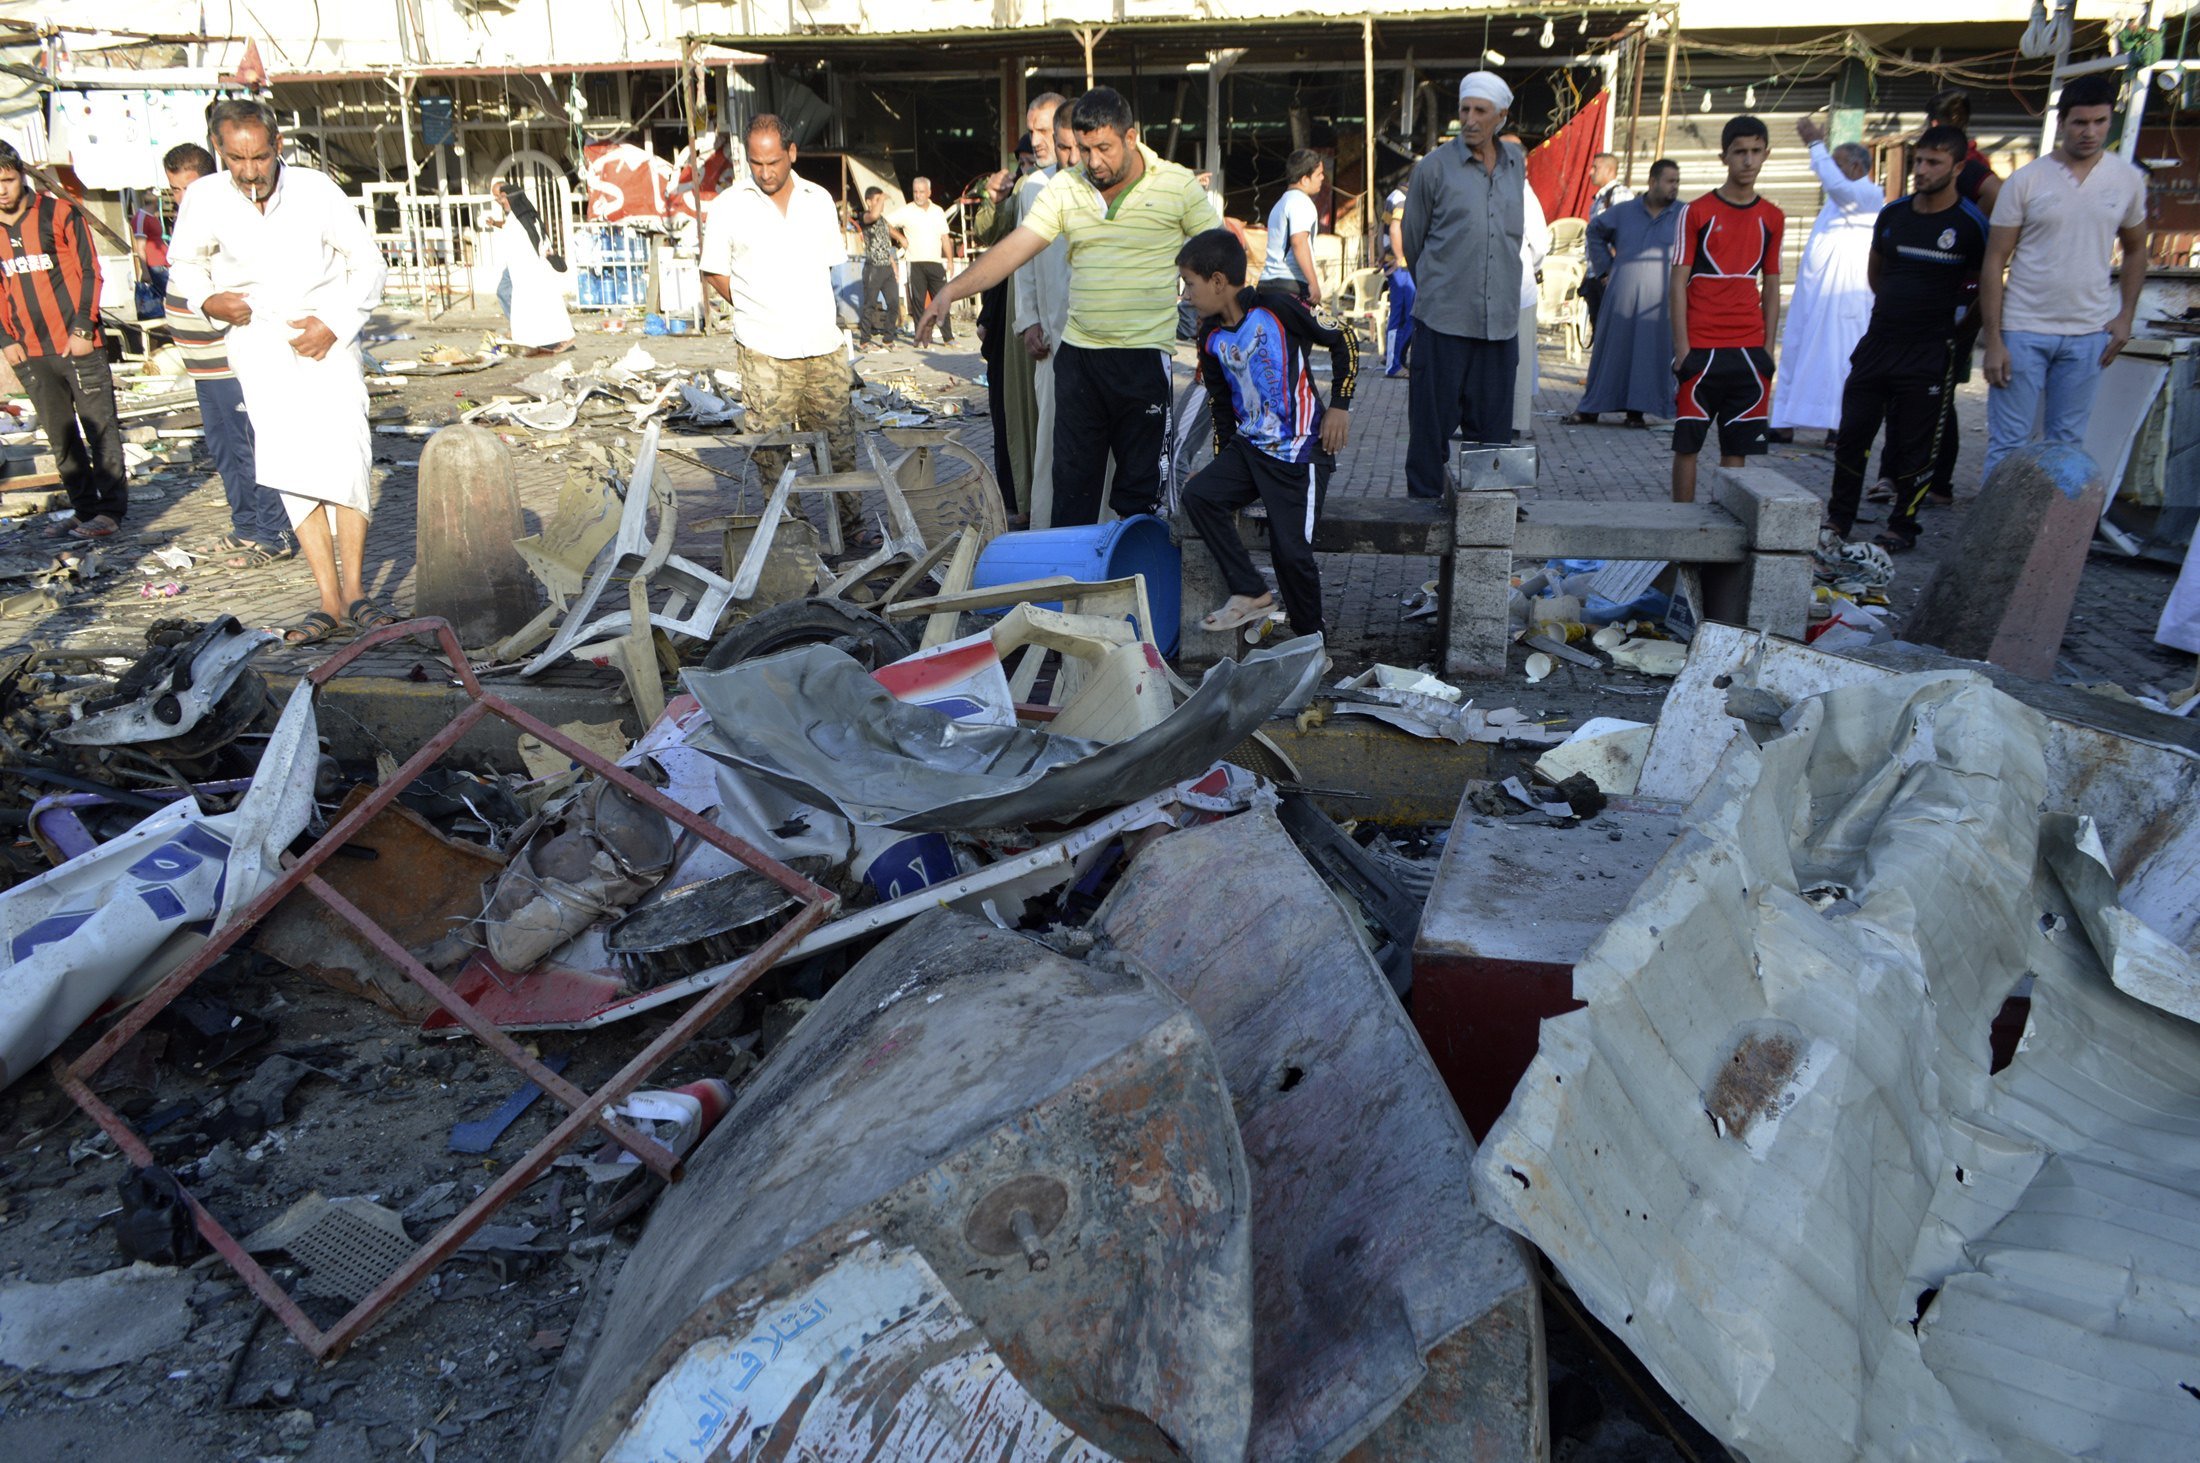 17 νεκροί και 57 τραυματίες από βομβιστικές επιθέσεις στην Βαγδάτη